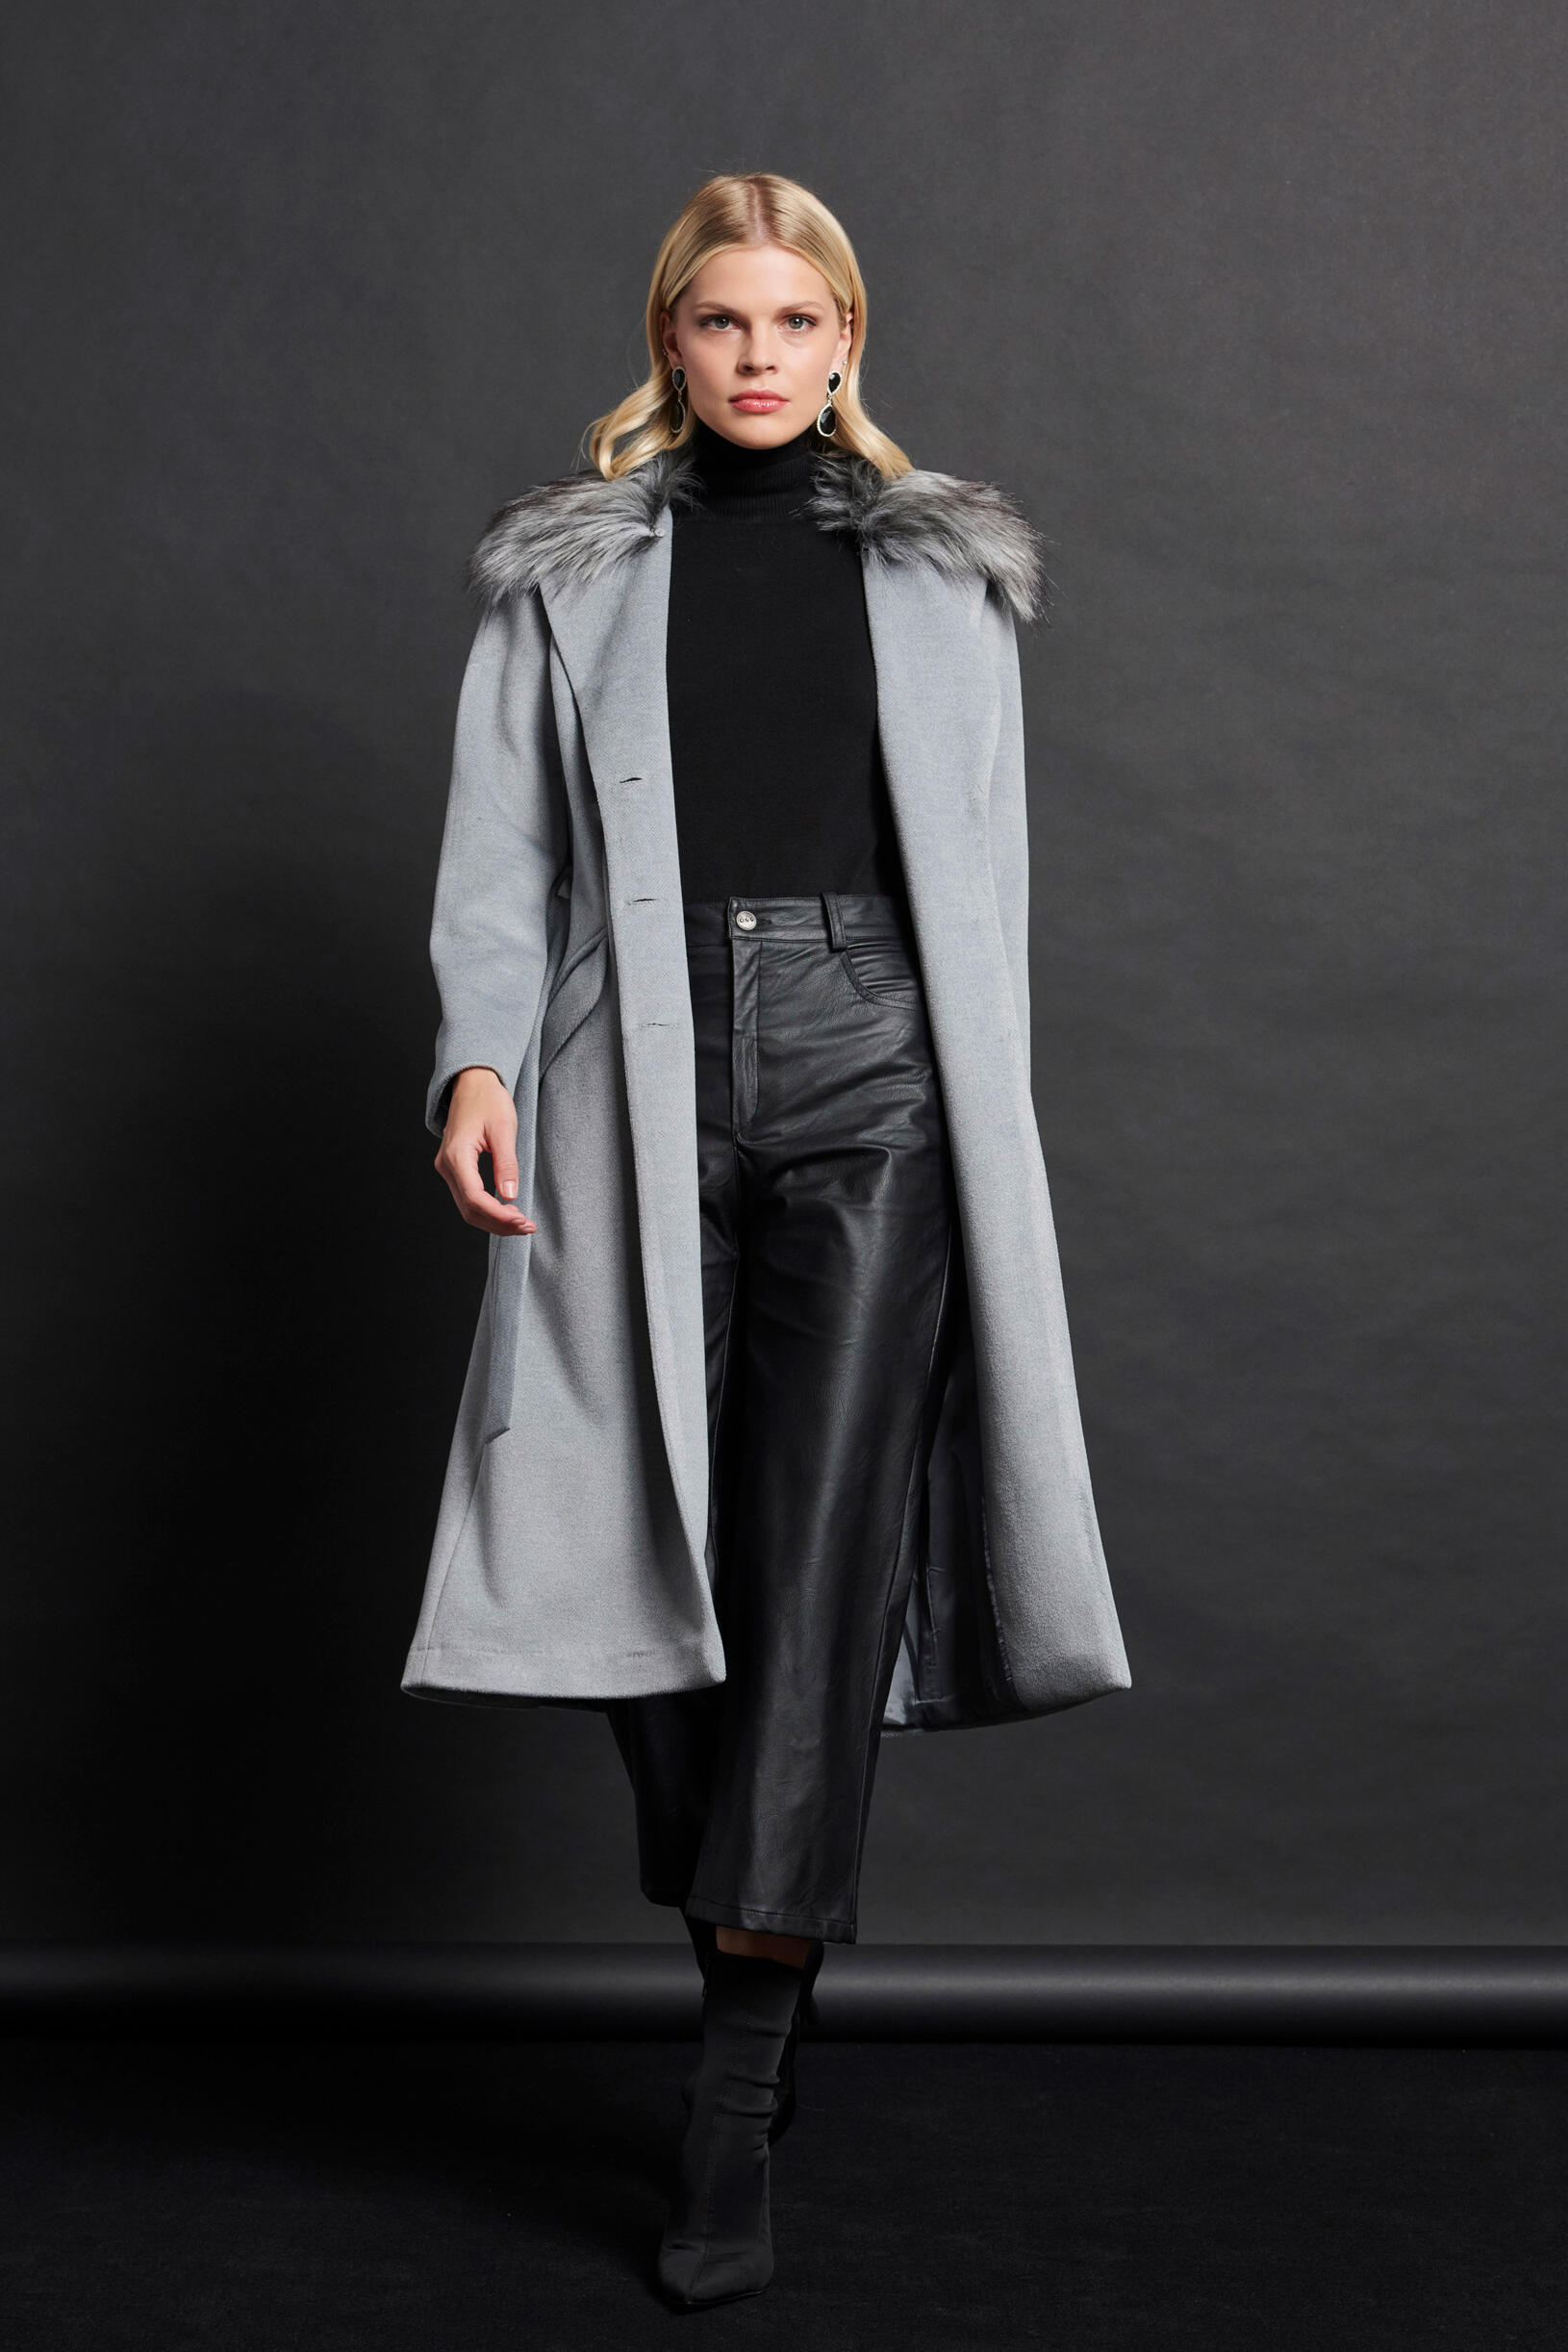 Παλτό μακρύ με συνθετική γούνα | Γυναικεία Ρούχα Bill Cost